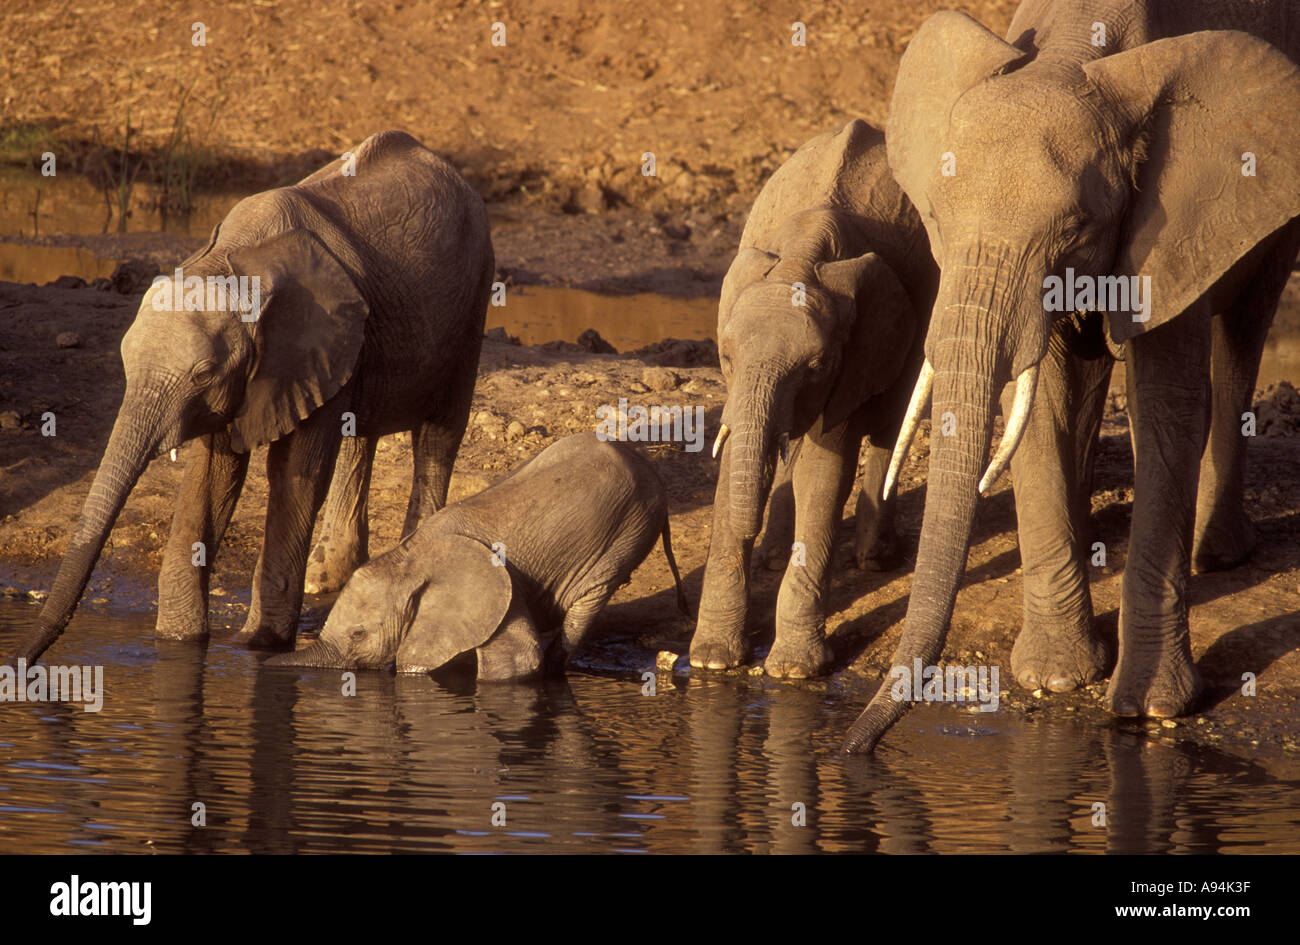 Les éléphants femelles et veaux boire la rivière Tarangire Parc national de Tarangire Tanzanie Afrique de l'Est Banque D'Images